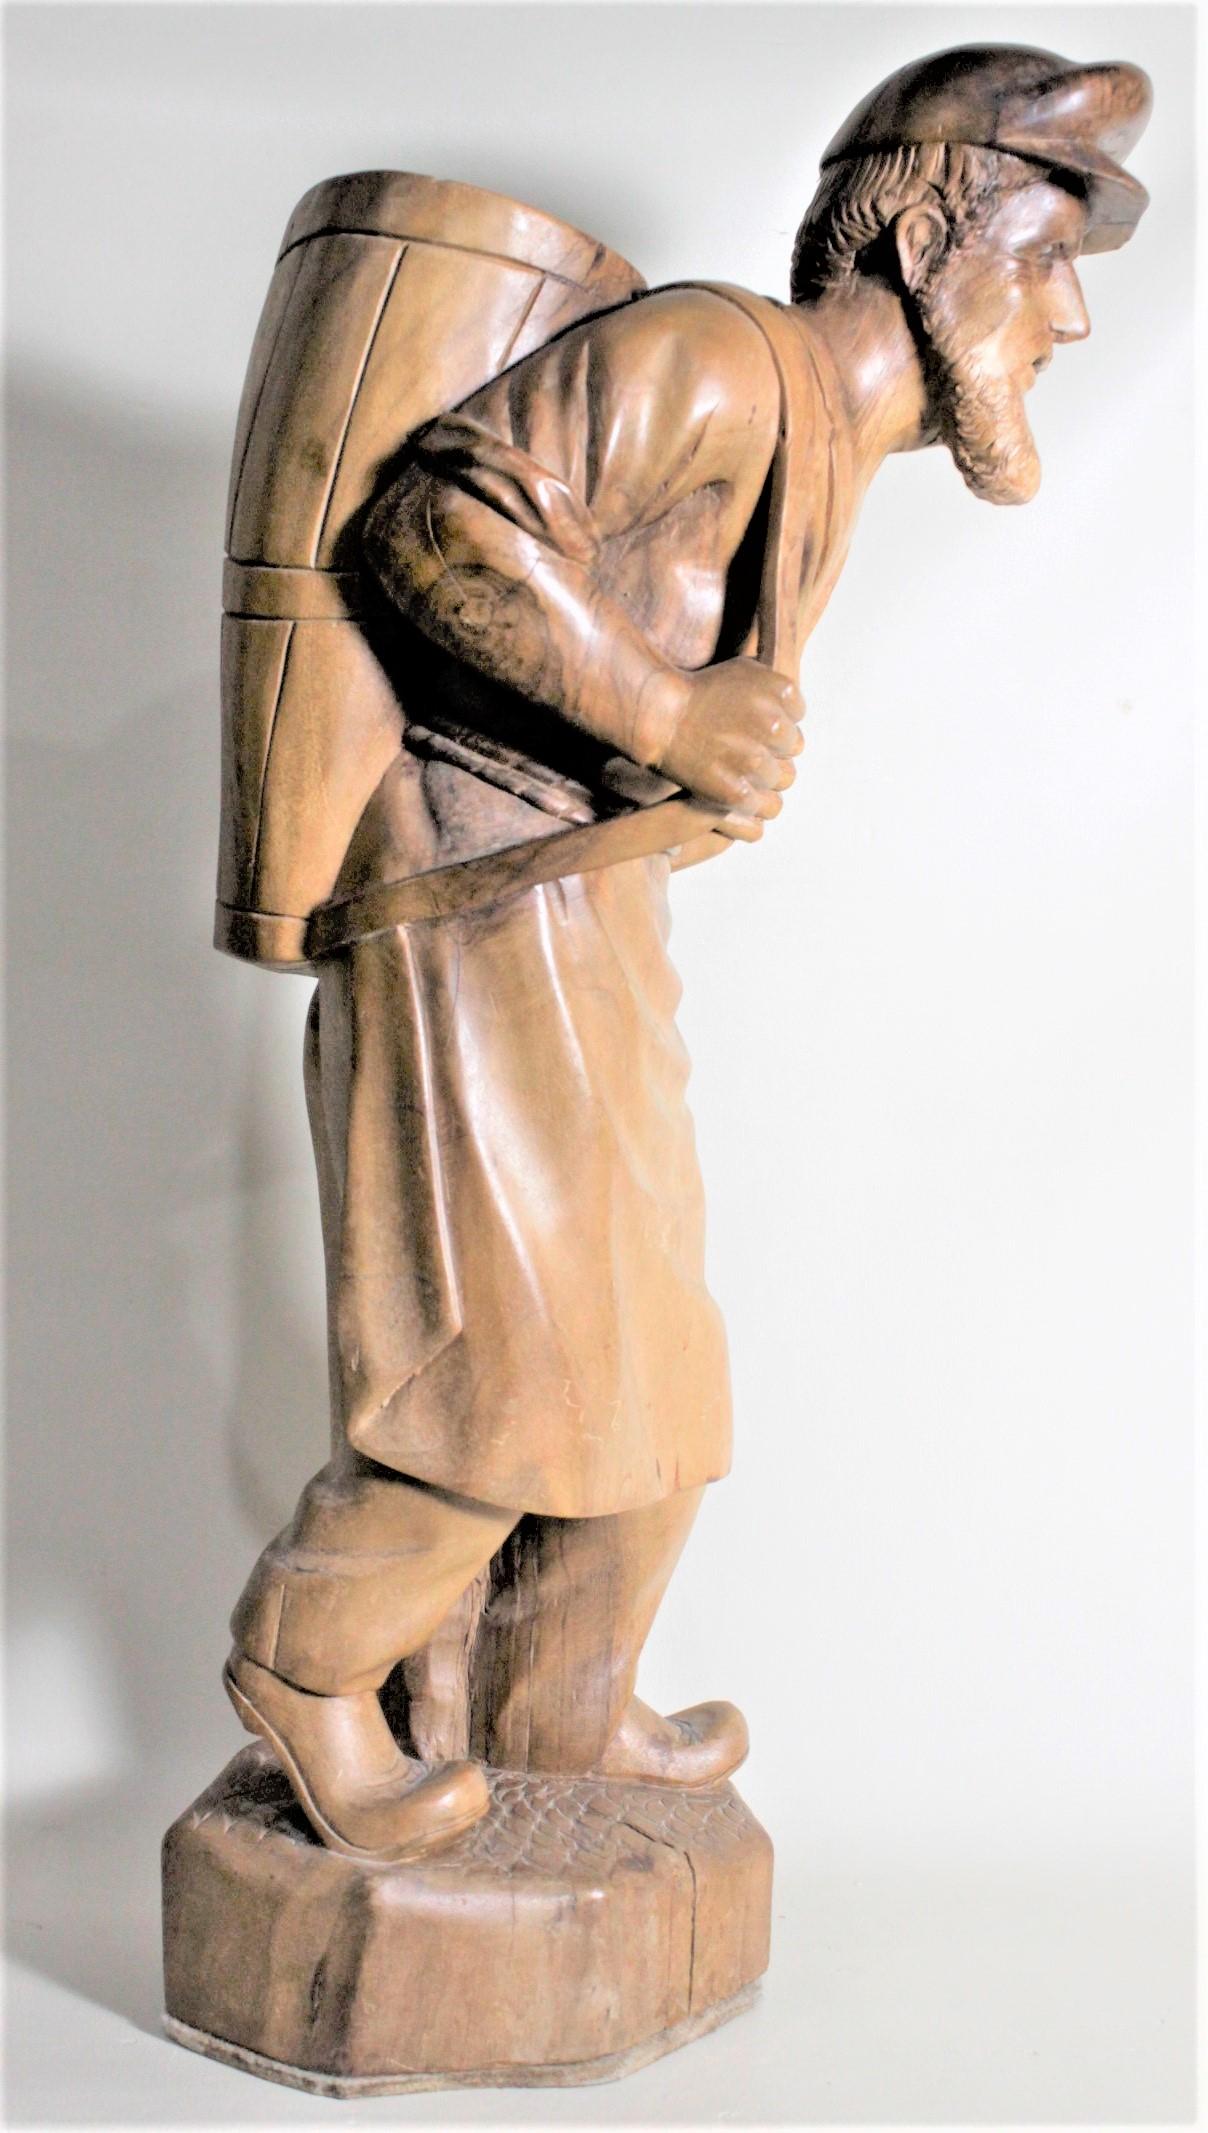 wooden man sculpture